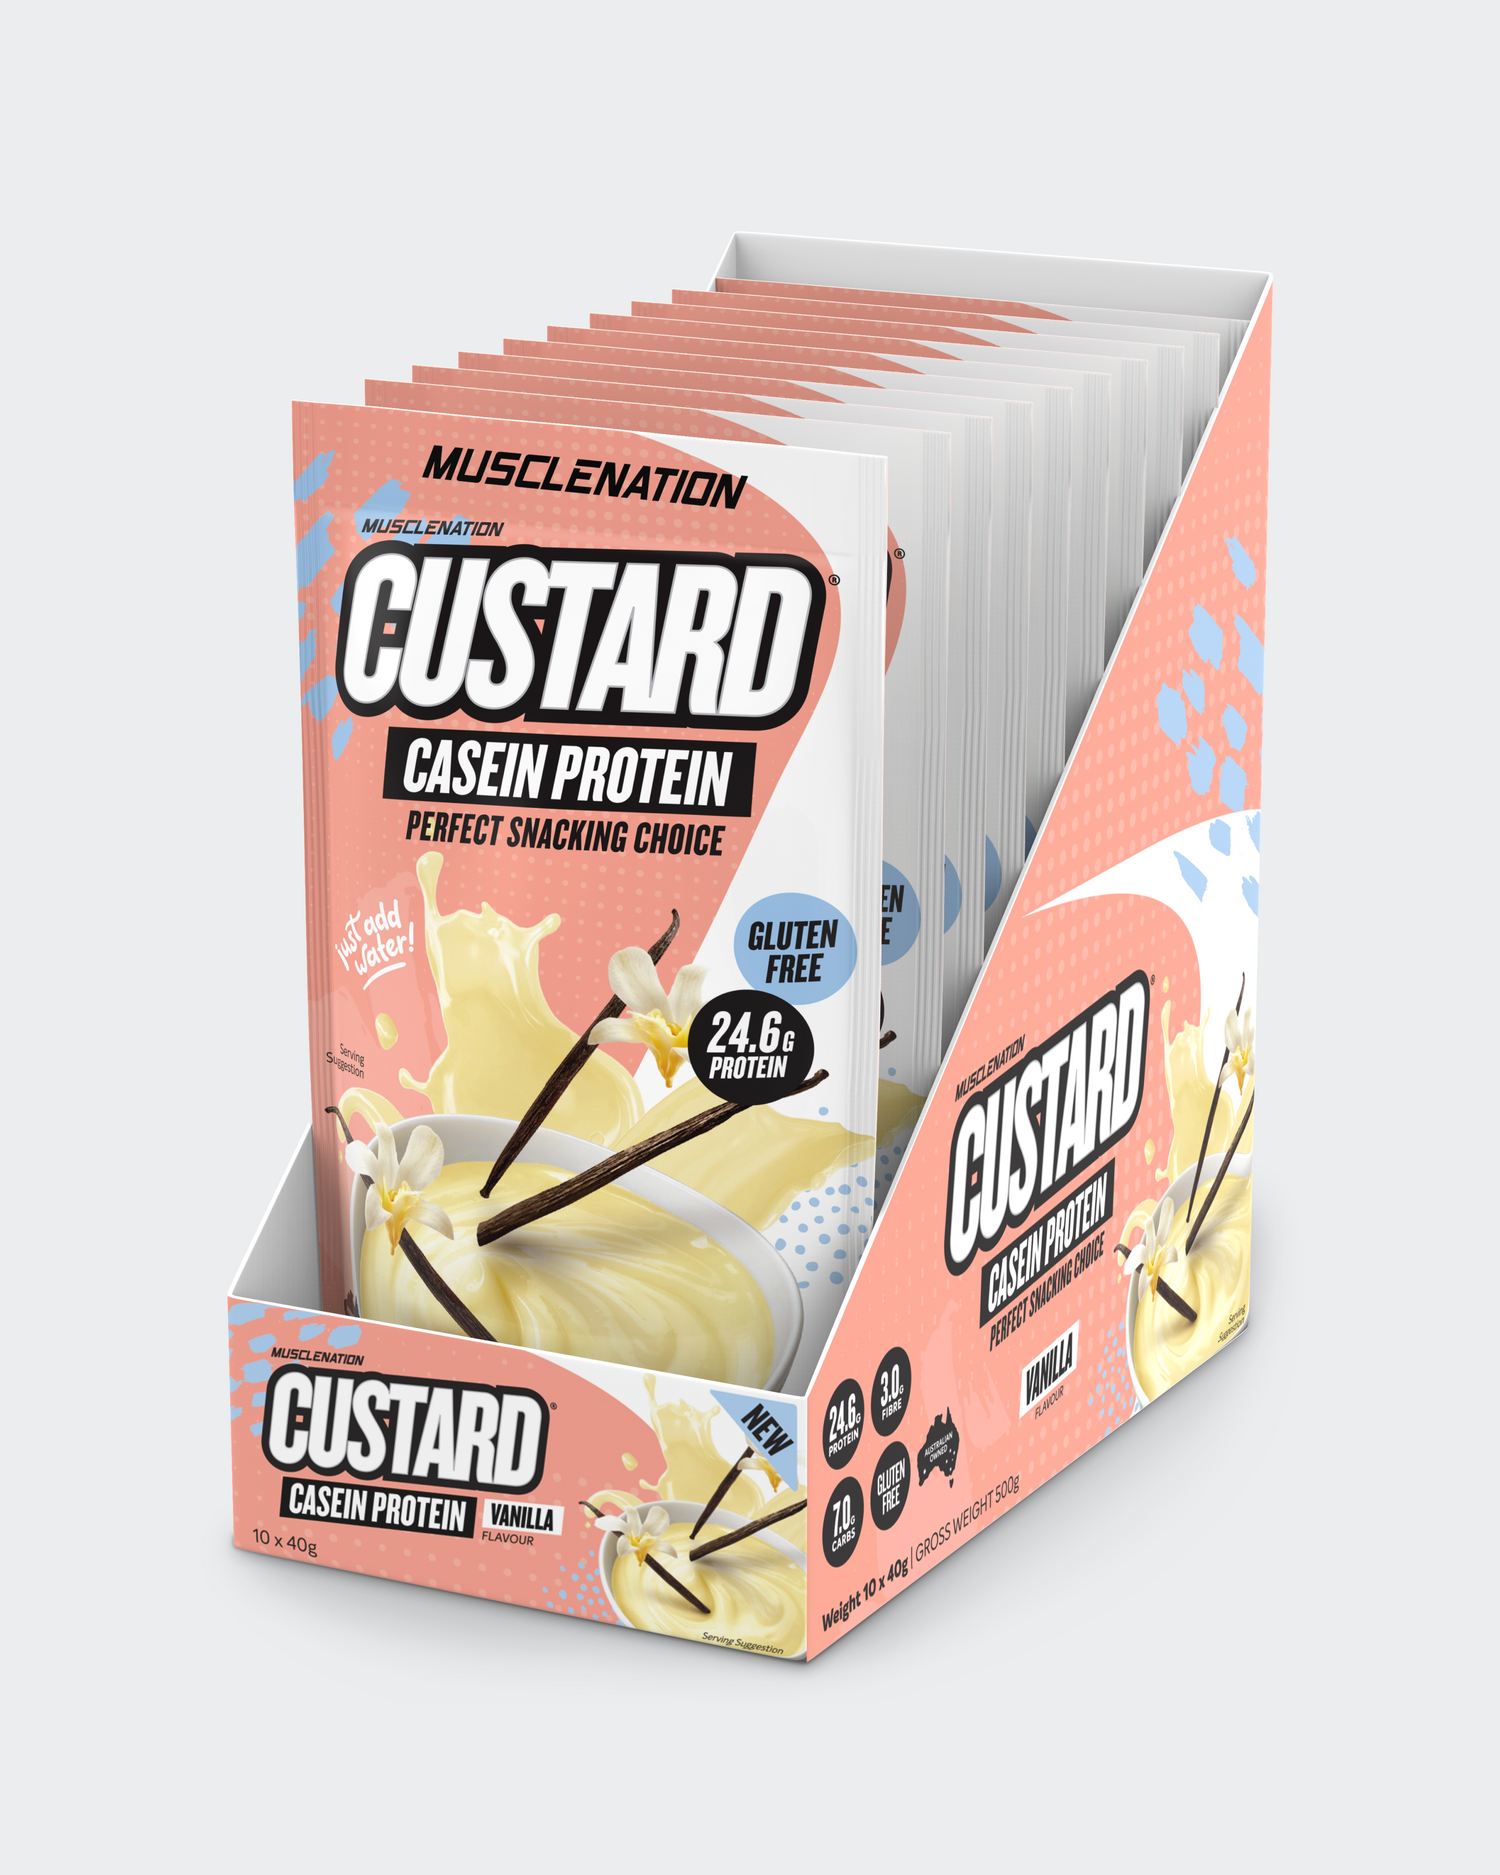 CUSTARD Casein Protein Vanilla - 10 Single Serve Sachets